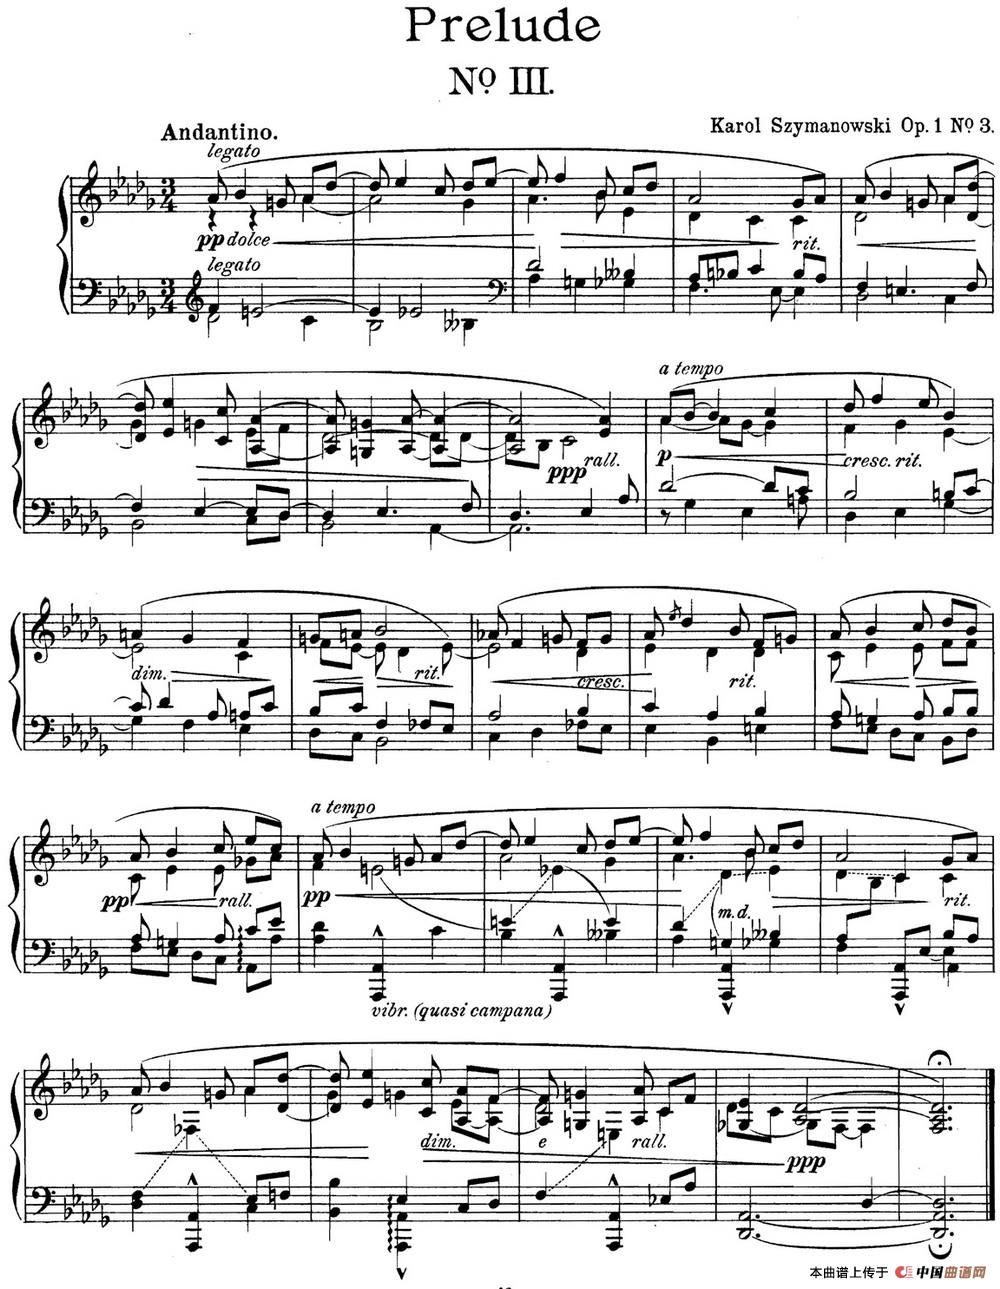 《希曼诺夫斯基 9首钢琴前奏曲 Op.1 No.3》钢琴曲谱图分享